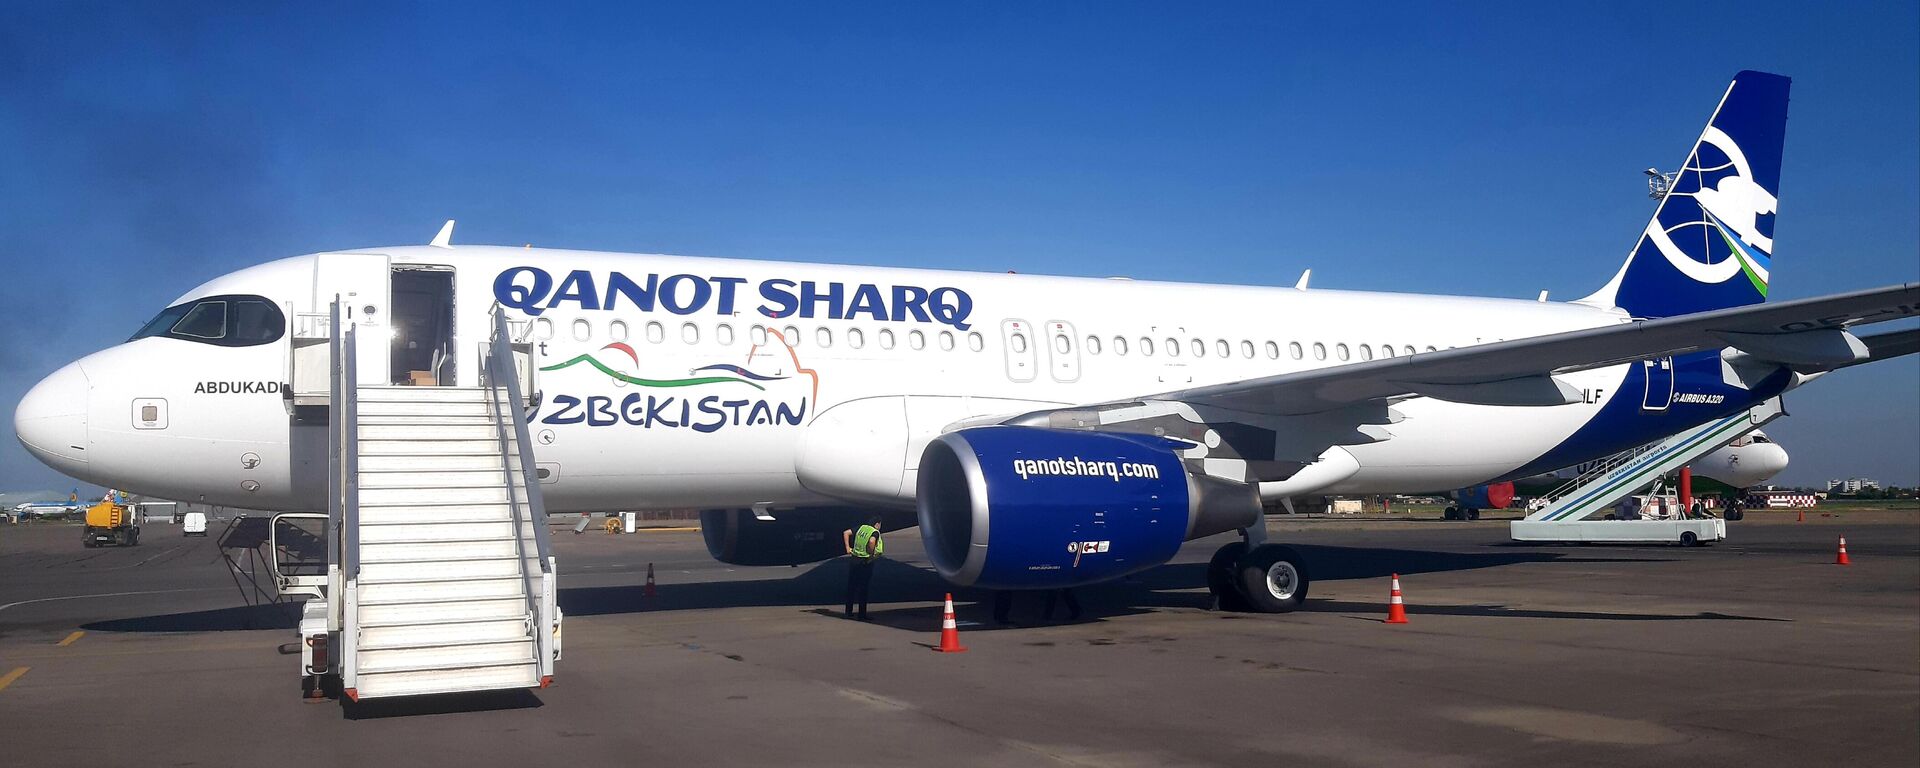 Авиакомпания Qanot Sharq получила первый самолет Airbus A320 - Sputnik Узбекистан, 1920, 16.10.2021